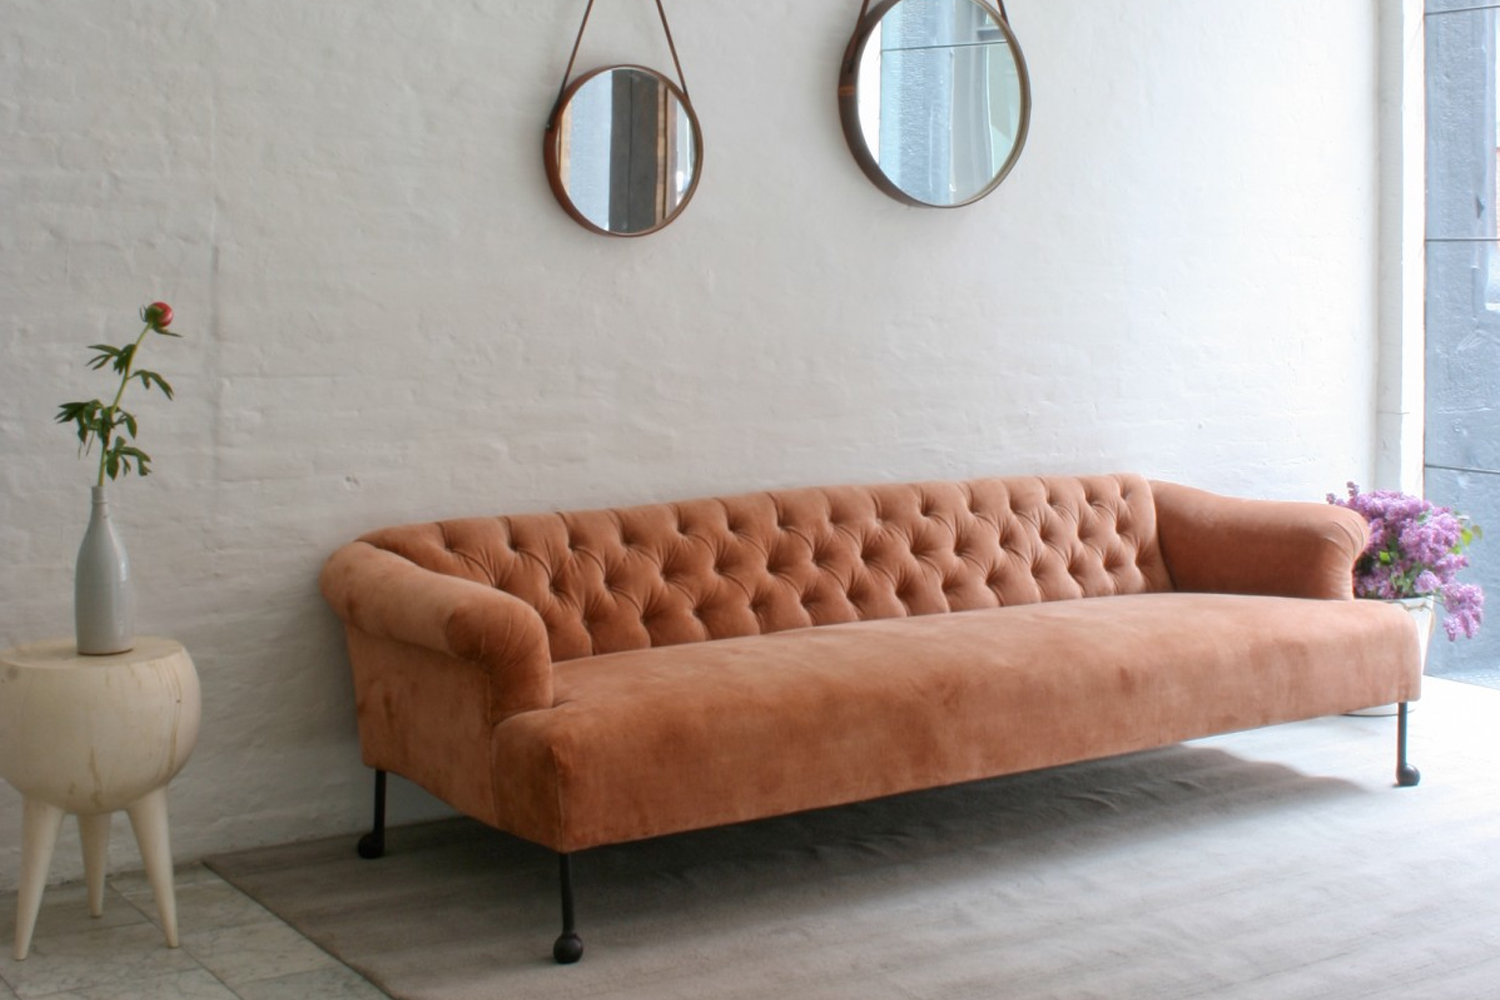 bddw edmund sofa pink 28